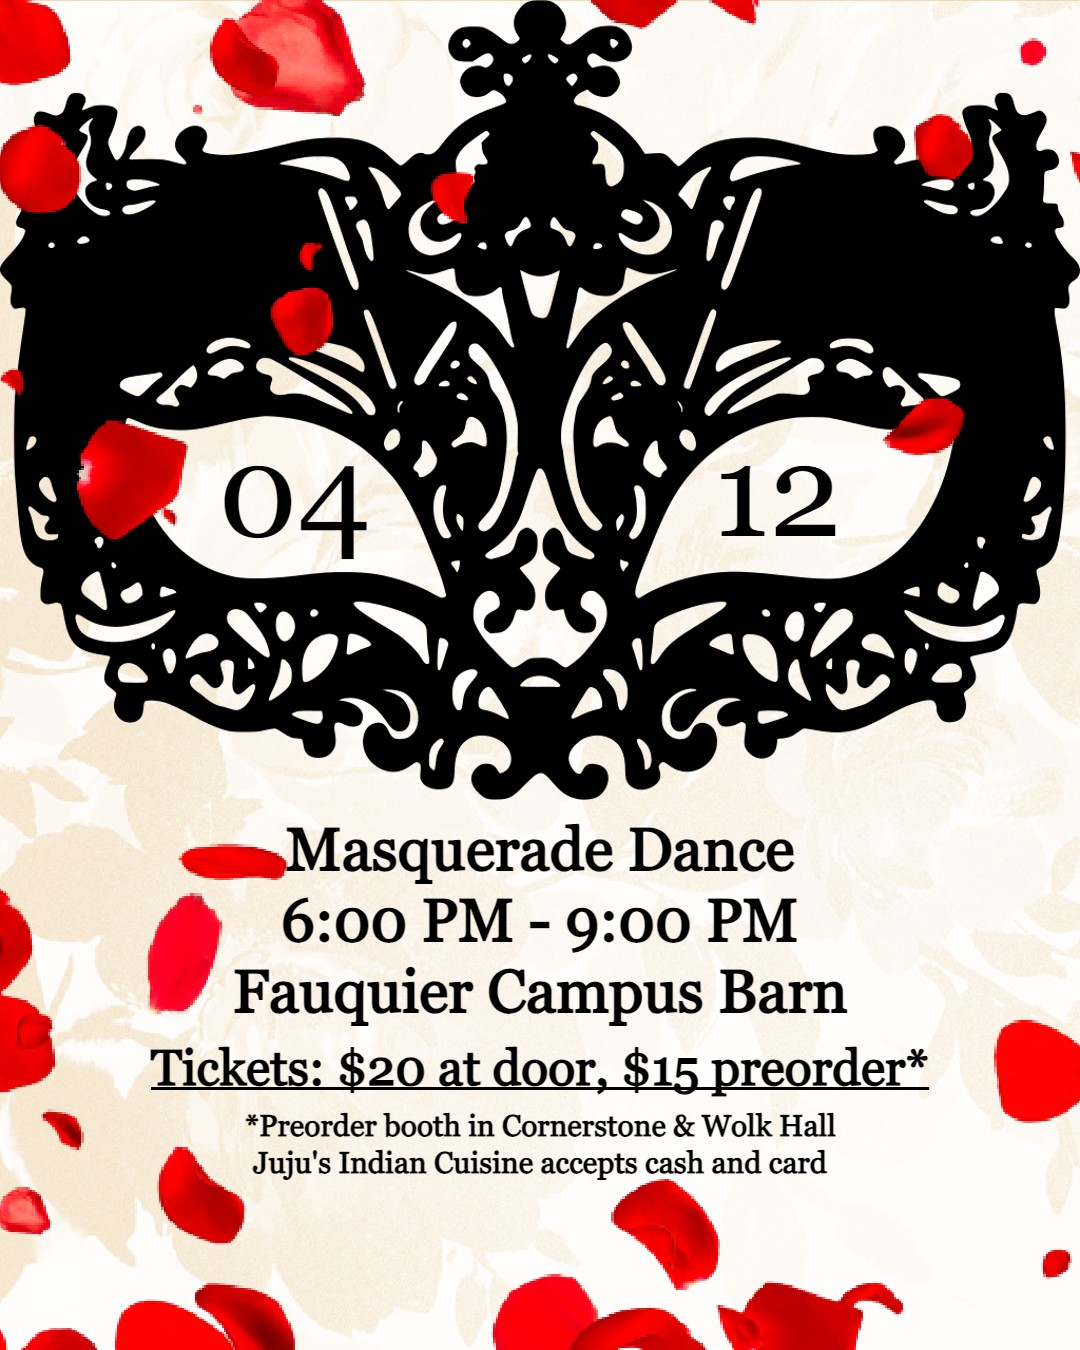 Masquerade Dance flyer